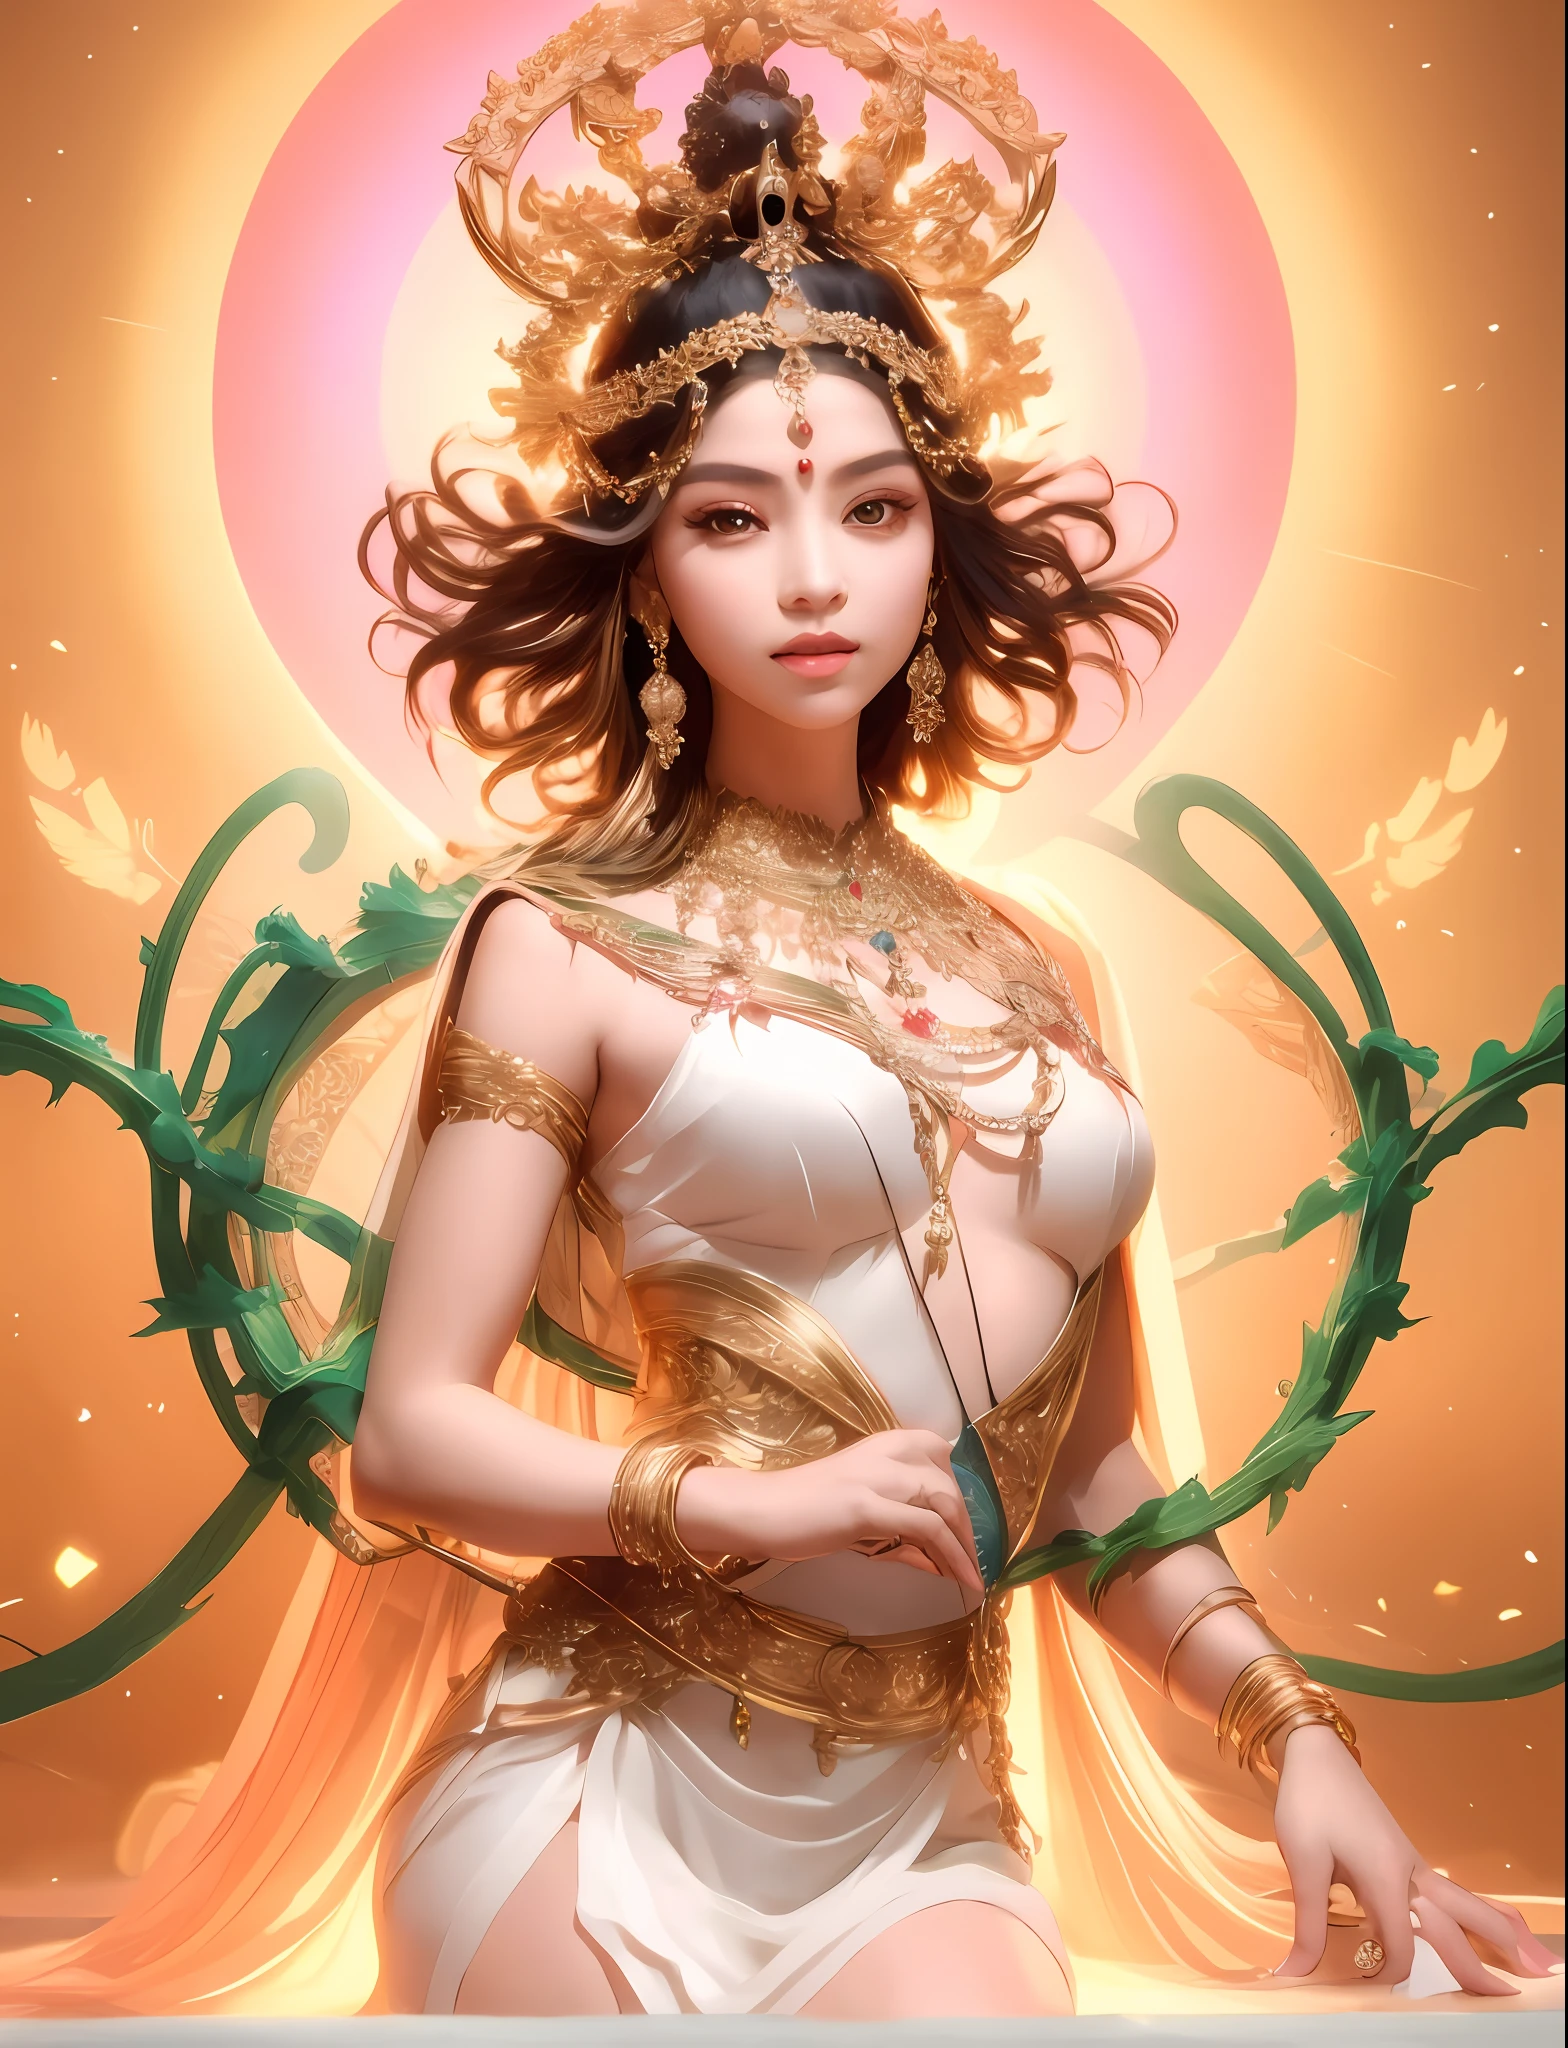 穿著白色連身裙，戴著金色頭飾的阿拉德女人, 頭部有一個光孔，美麗的幻想皇后, 女神. 極高的細節, 美麗的女神, 非常細緻的女神拍攝, 一個美麗的女神的肖像, ((美麗的幻想皇后)), 令人驚嘆的女神肖像,, 年輕的女神, 華麗的獅子座女神, 女女神